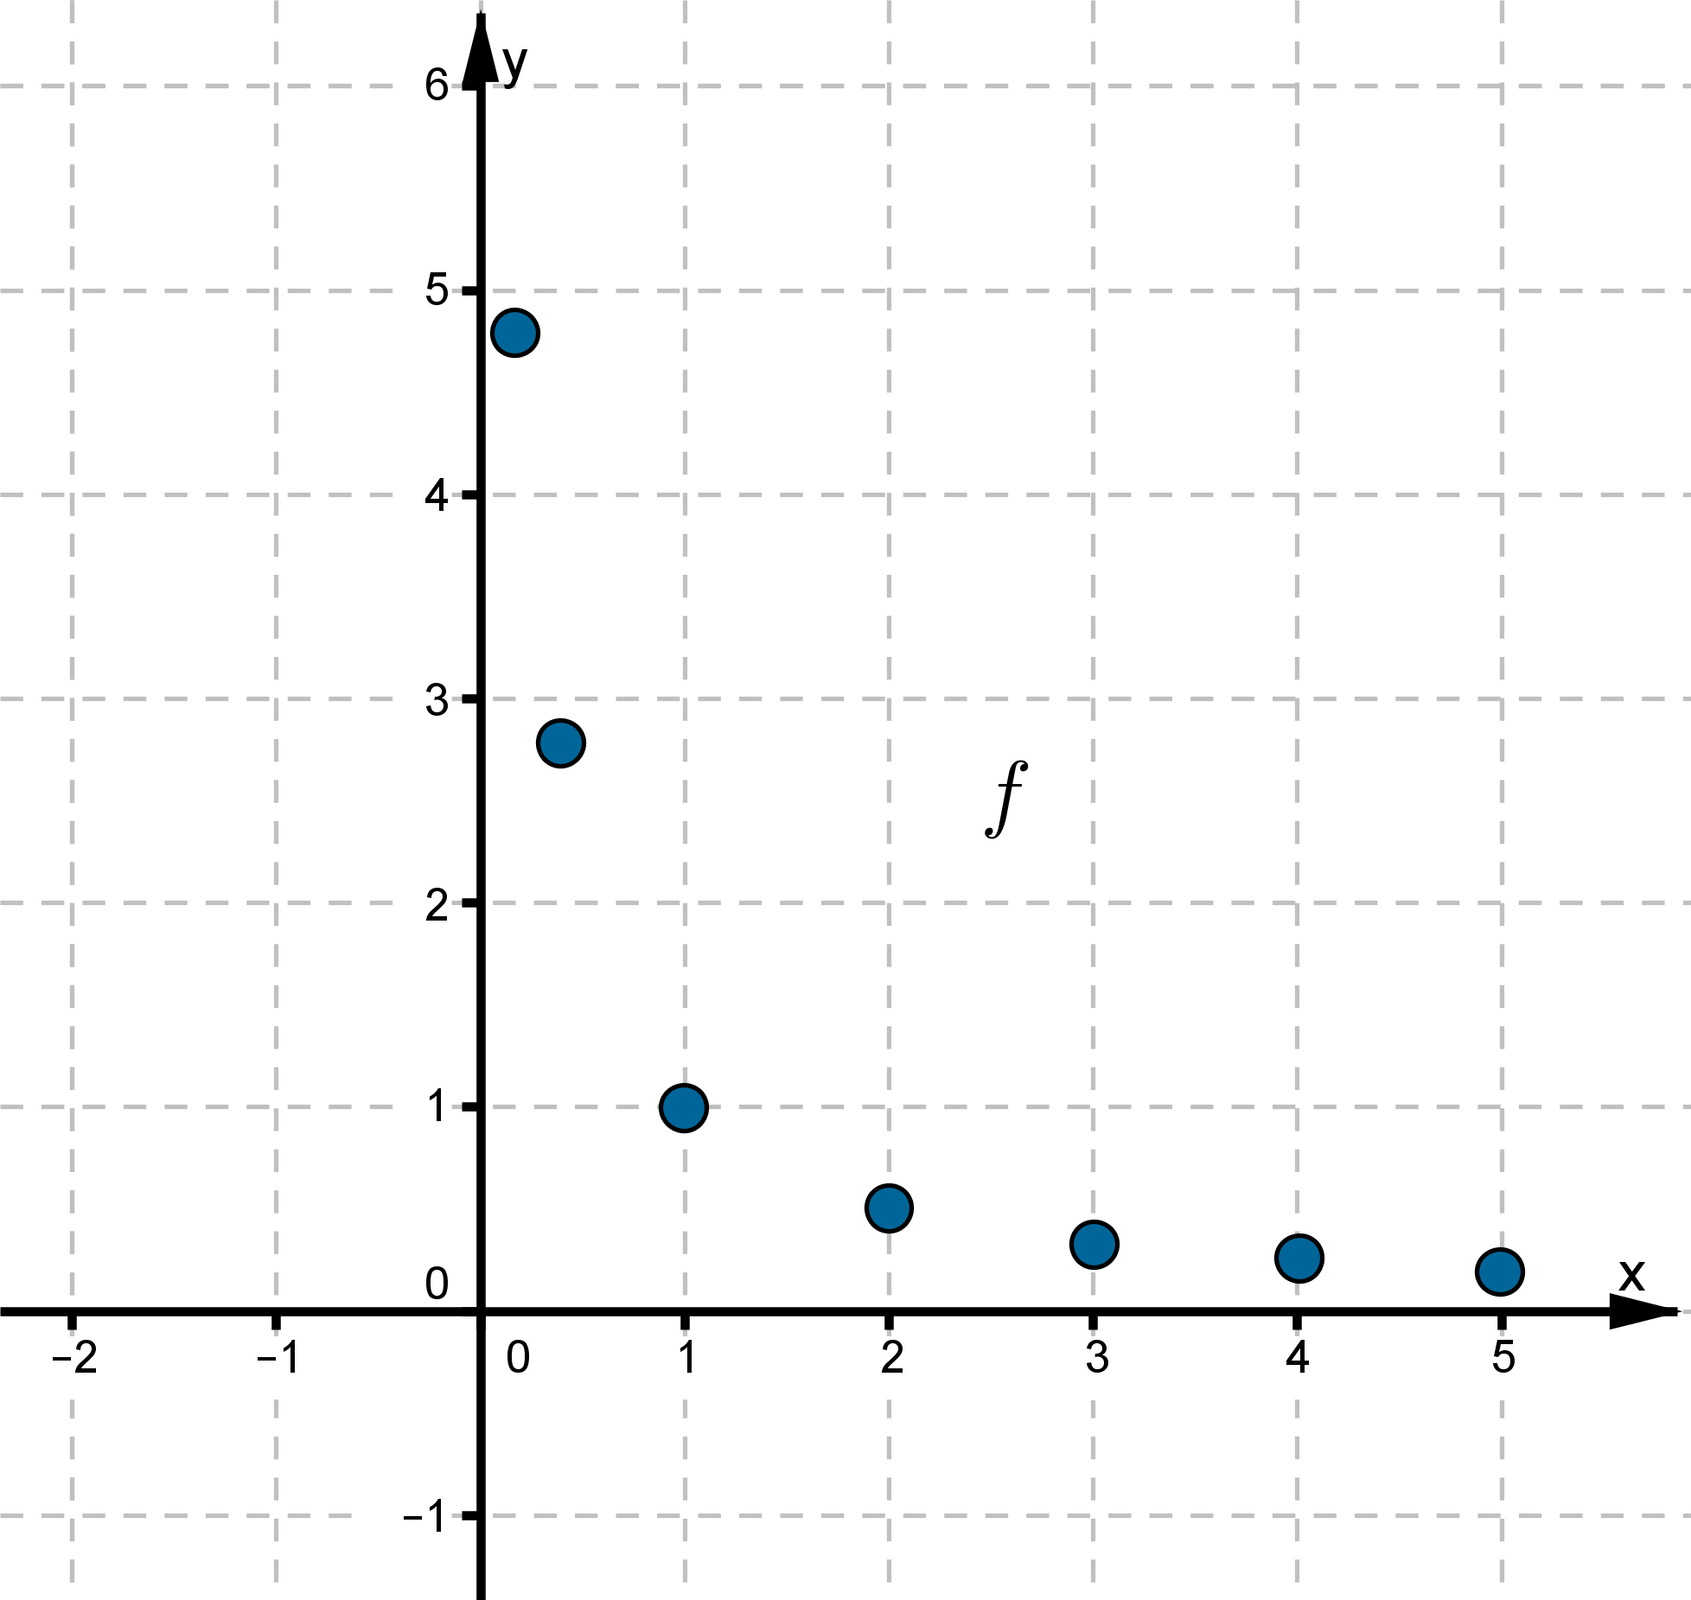 Wykres funkcji składa się siedmiu punktów leżących w pierwszej ćwiartce układu współrzędnych. Dla każdego punktu wraz ze wzrostem argumentu maleje wartość funkcji.